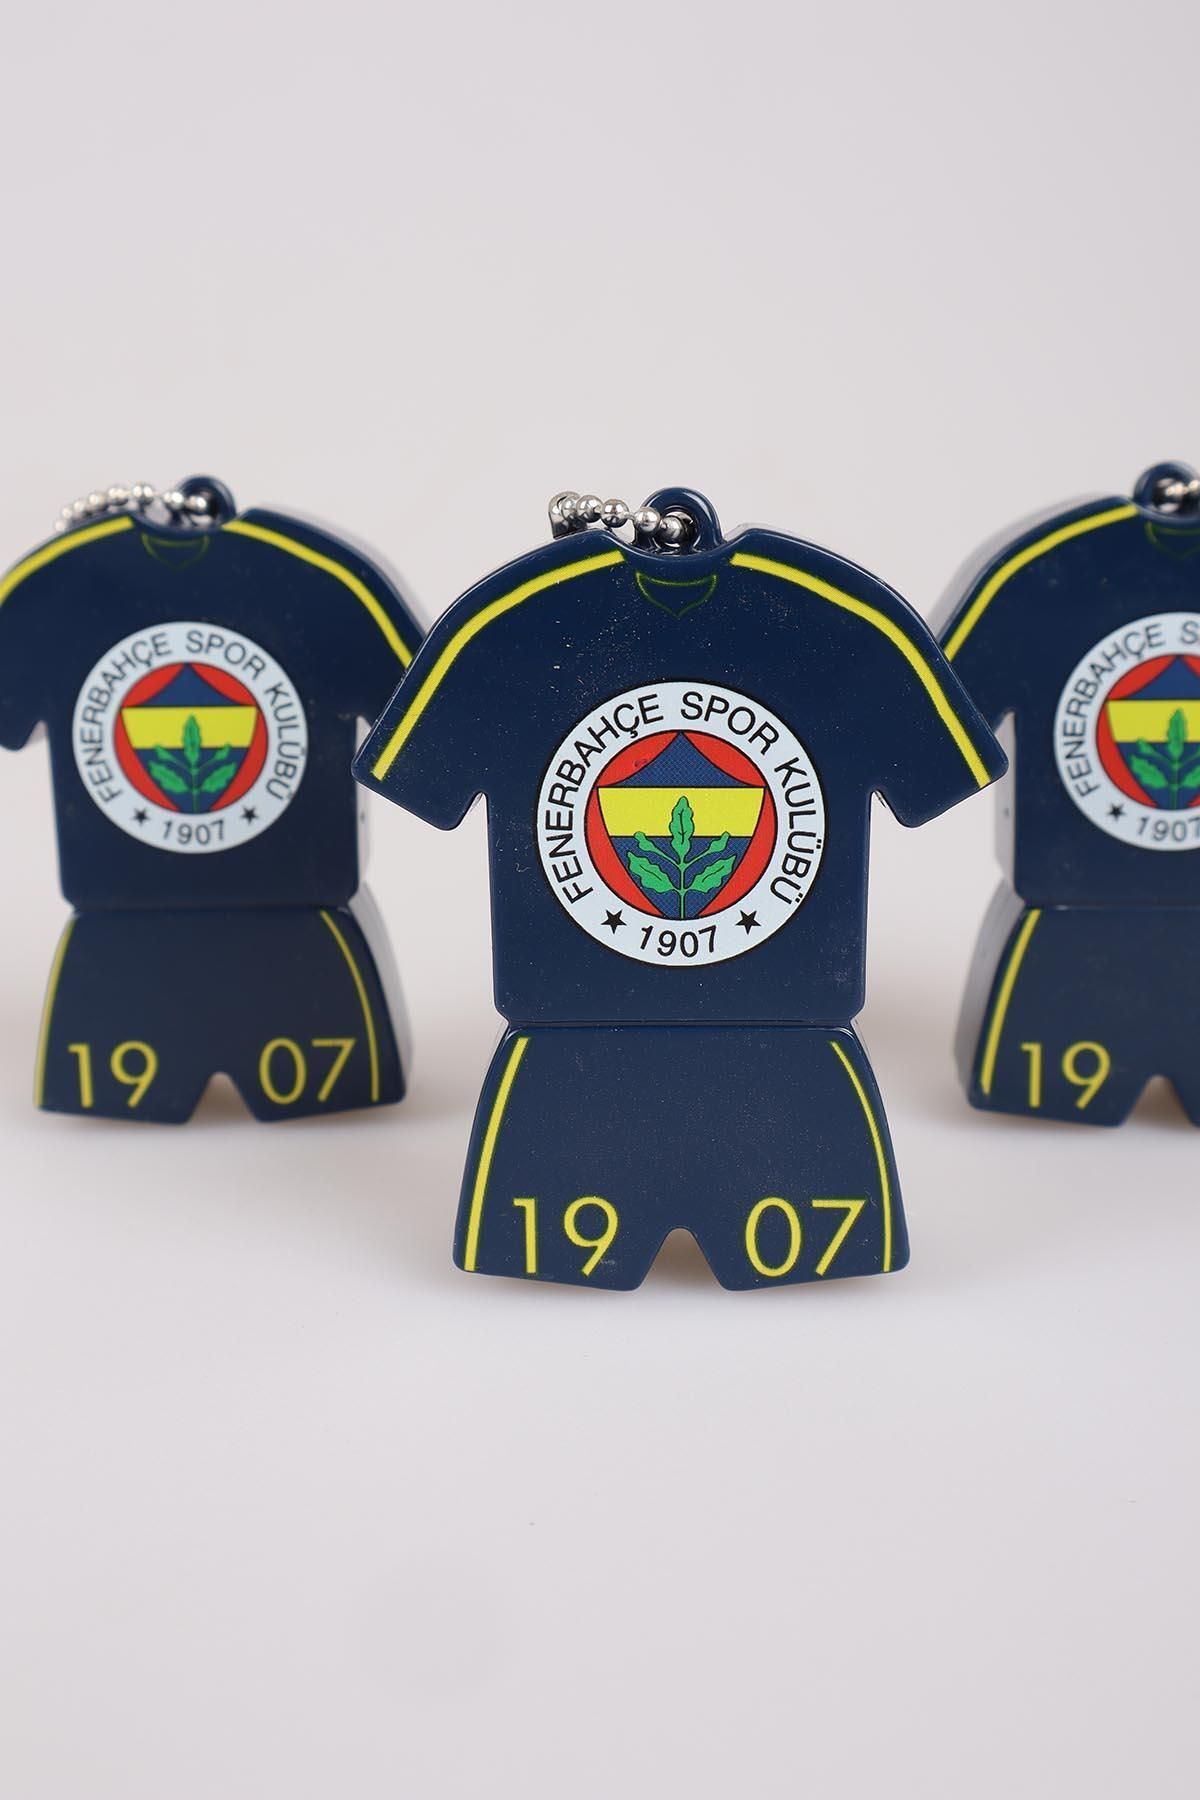 Fenerbahçe Lisanslı Forma Tasarımlı Kalemtraş